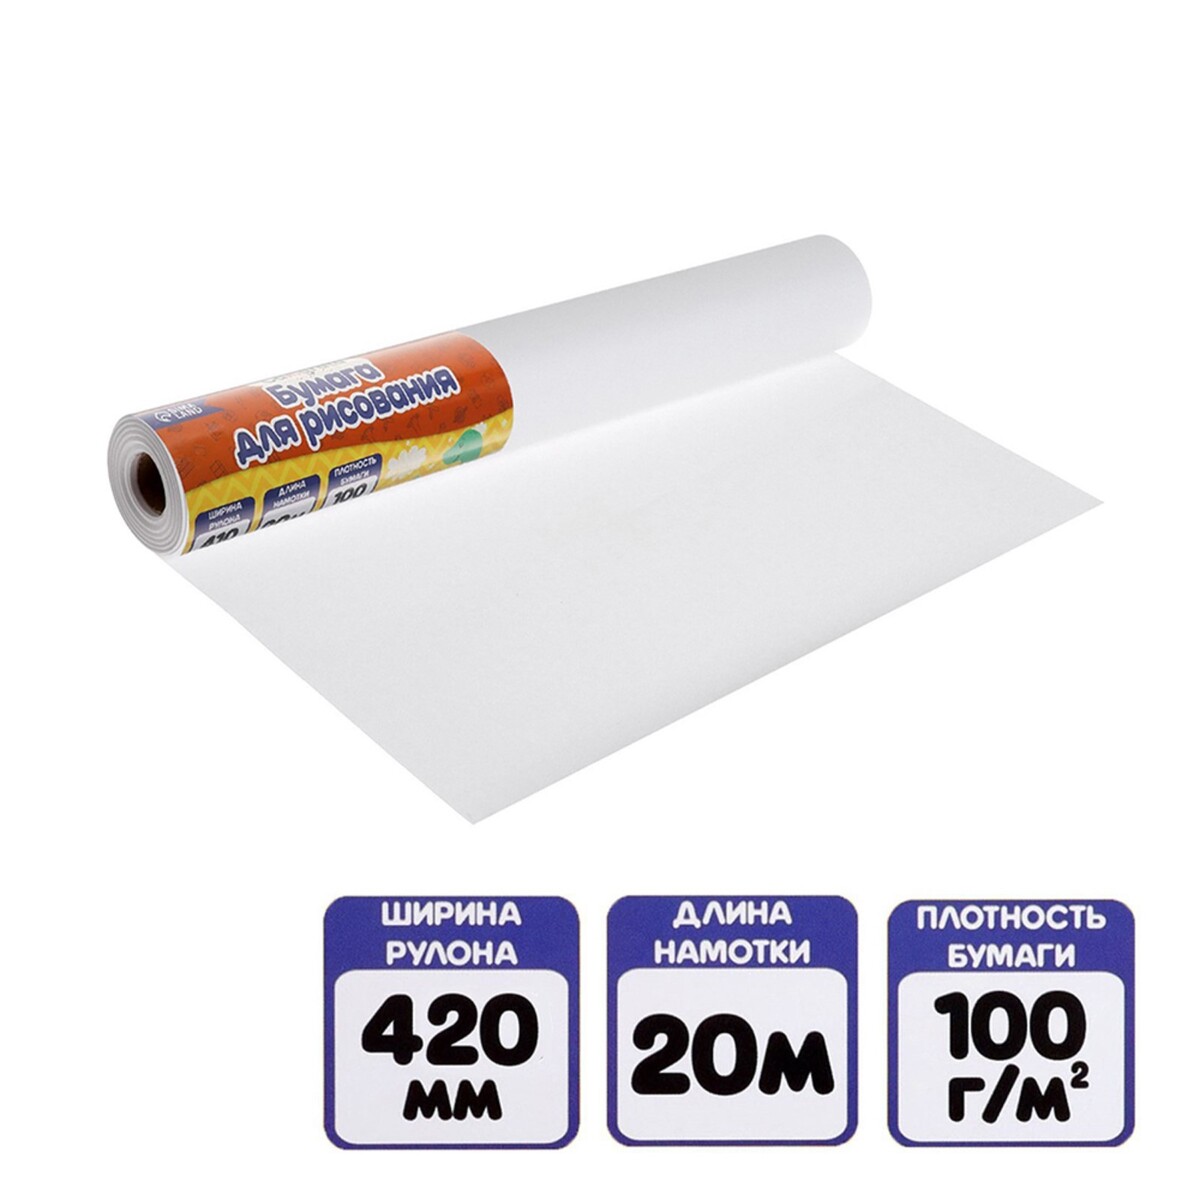 Бумага для рисования, в рулоне, ширина 41 см, длина 20 м, calligrata, 100 г/м2 бумага туалетная снежок без втулки 1 слой 40 метров 32 рулона